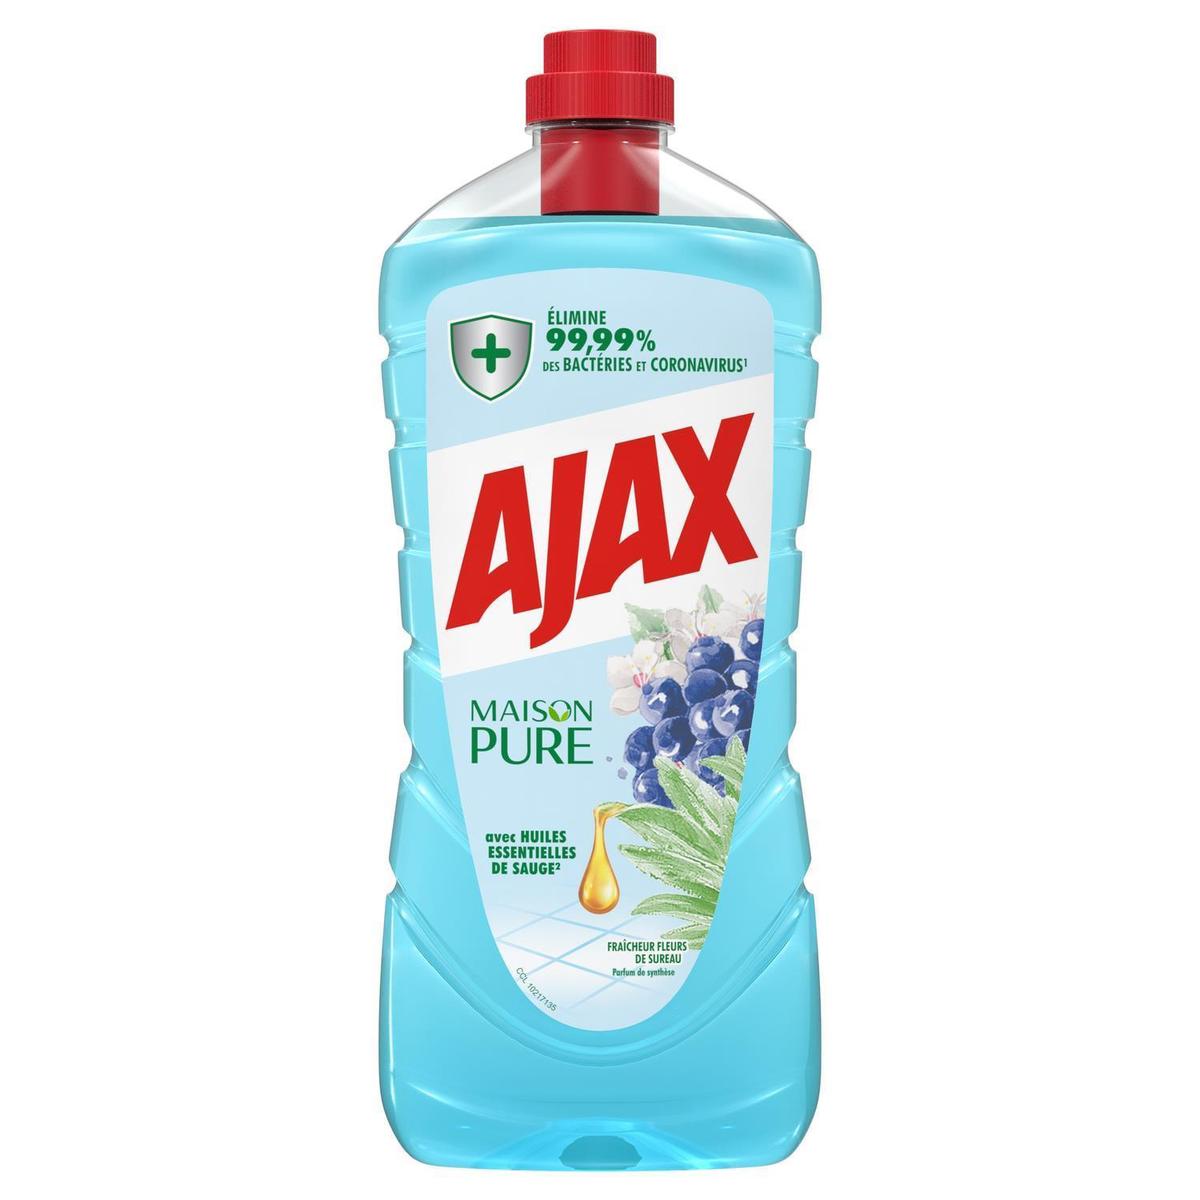 Acheter Ajax Nettoyant Ménager Maison Pure Fraîcheur Fleurs de Sureau